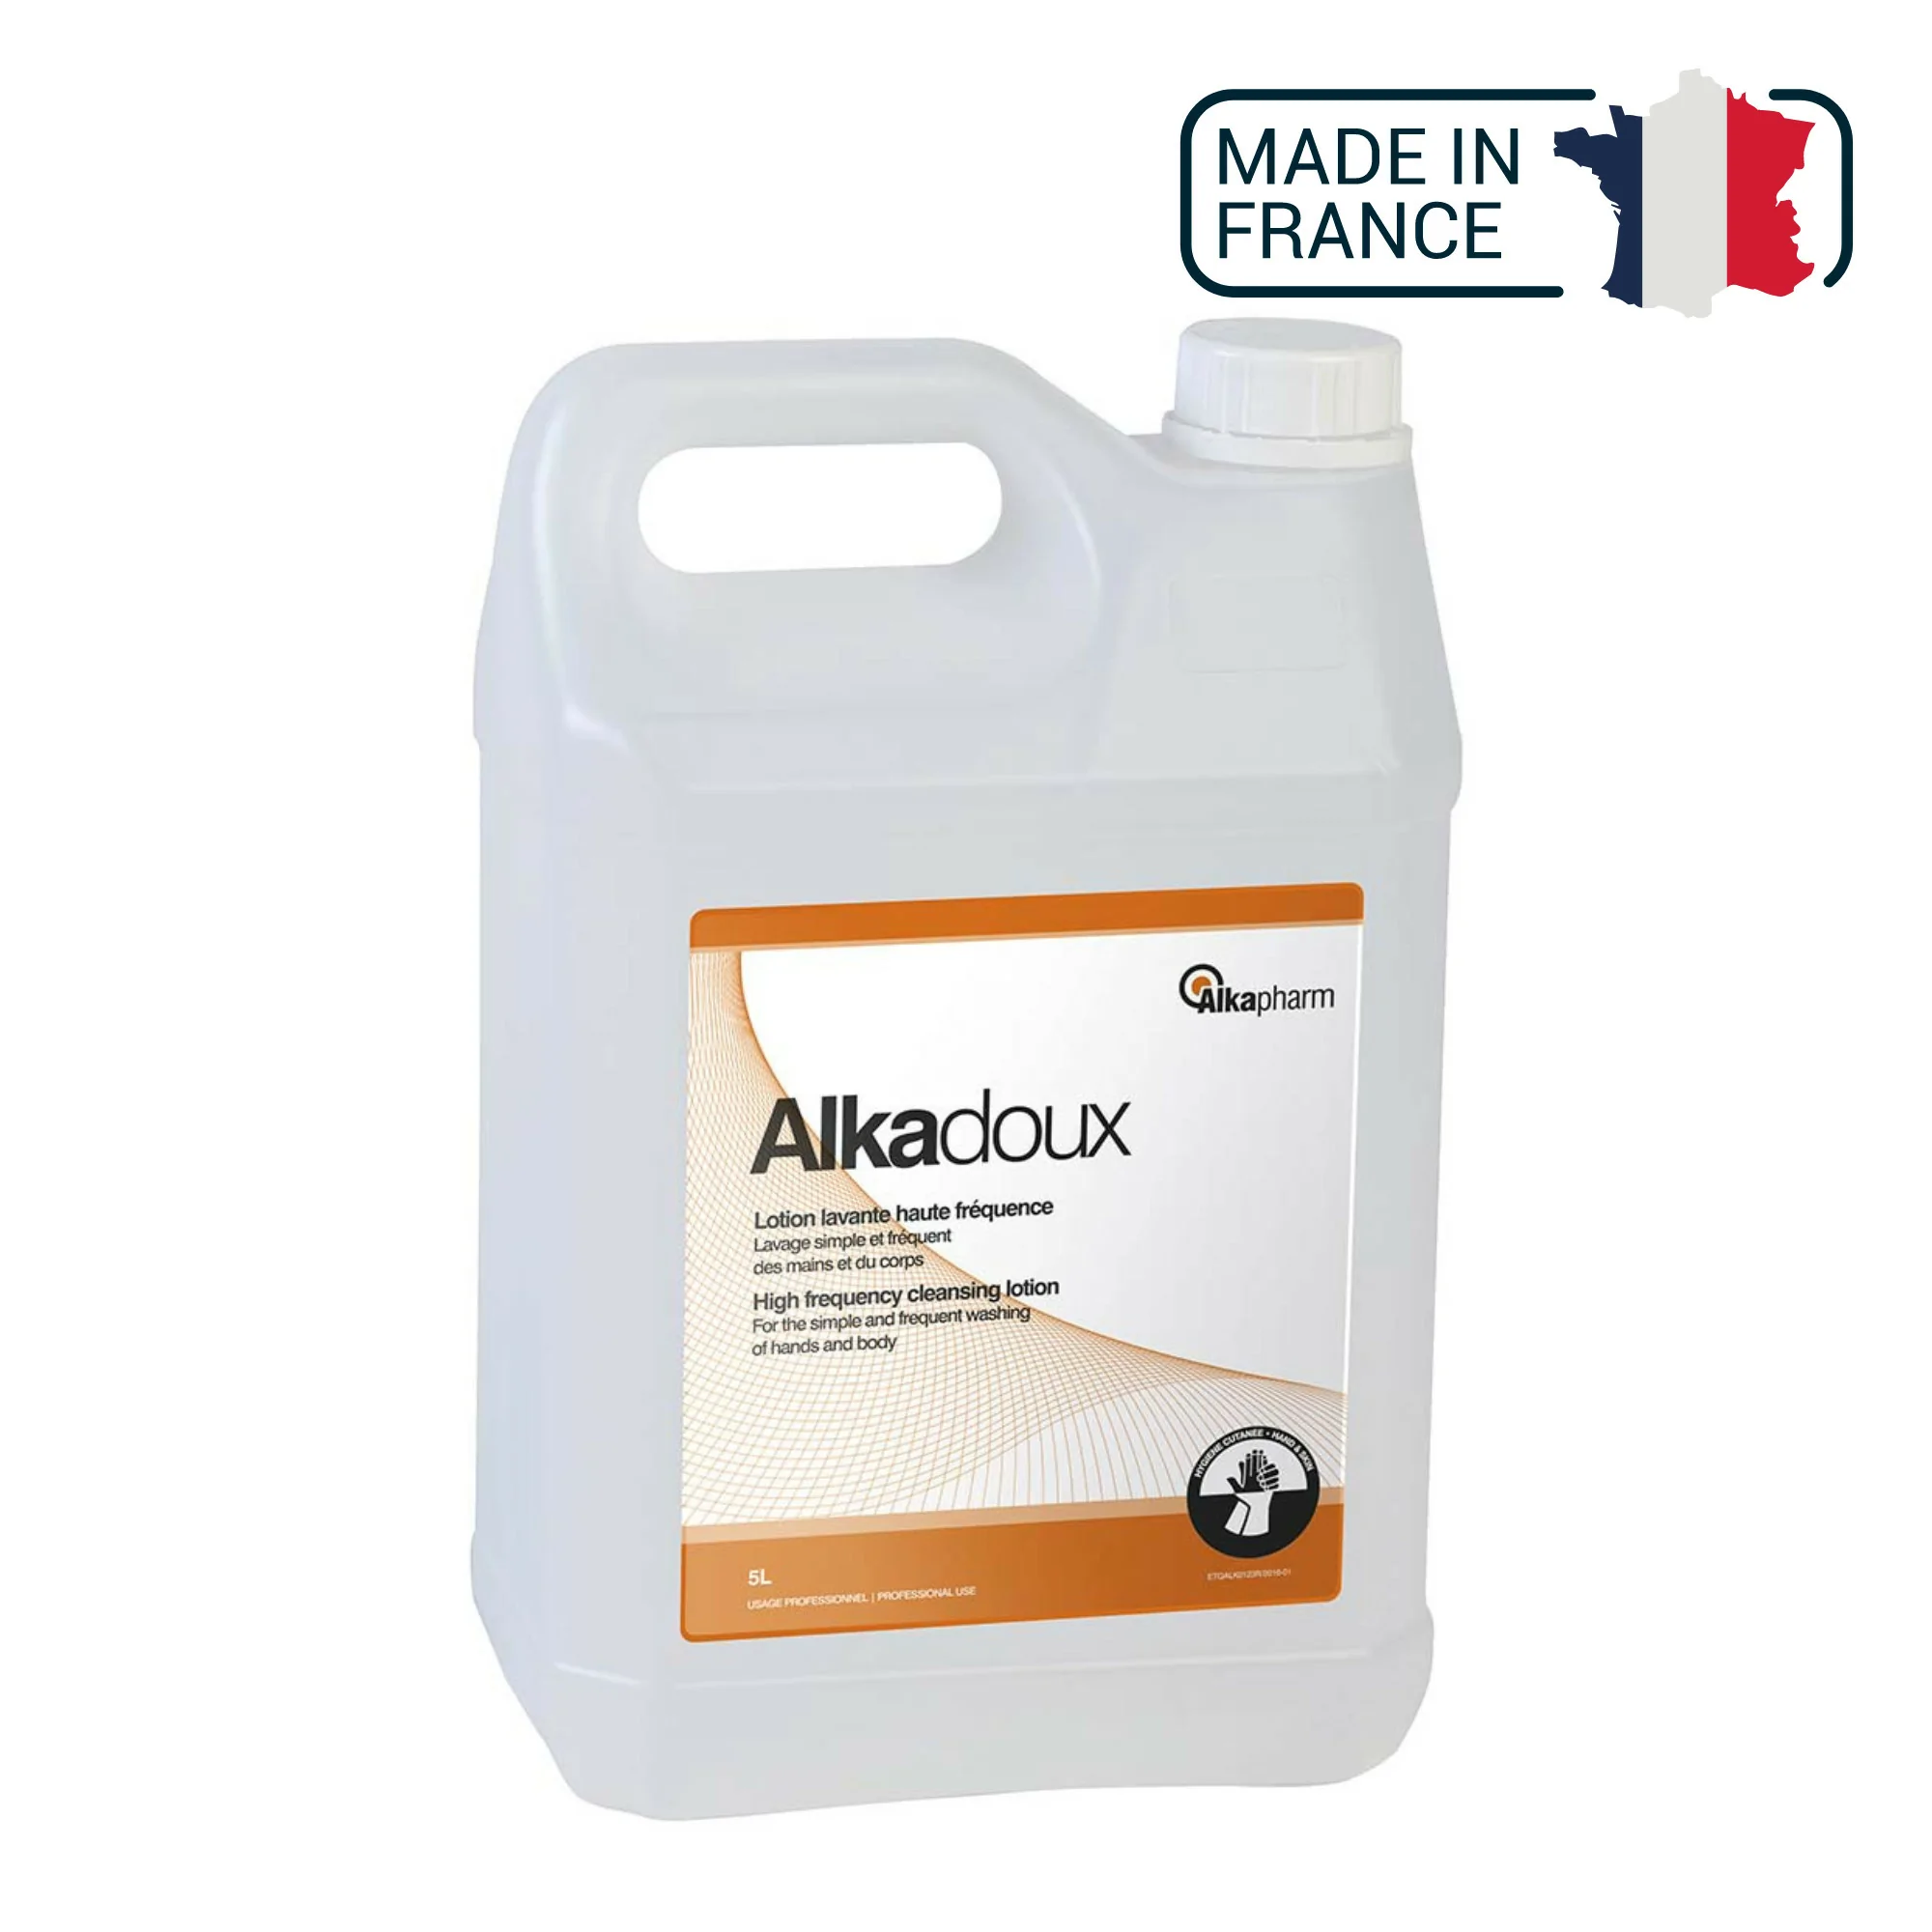 Alkadoux - Lotion lavante haute fréquence à pH neutre - Bidon recharge - 5 L - Alkapharm